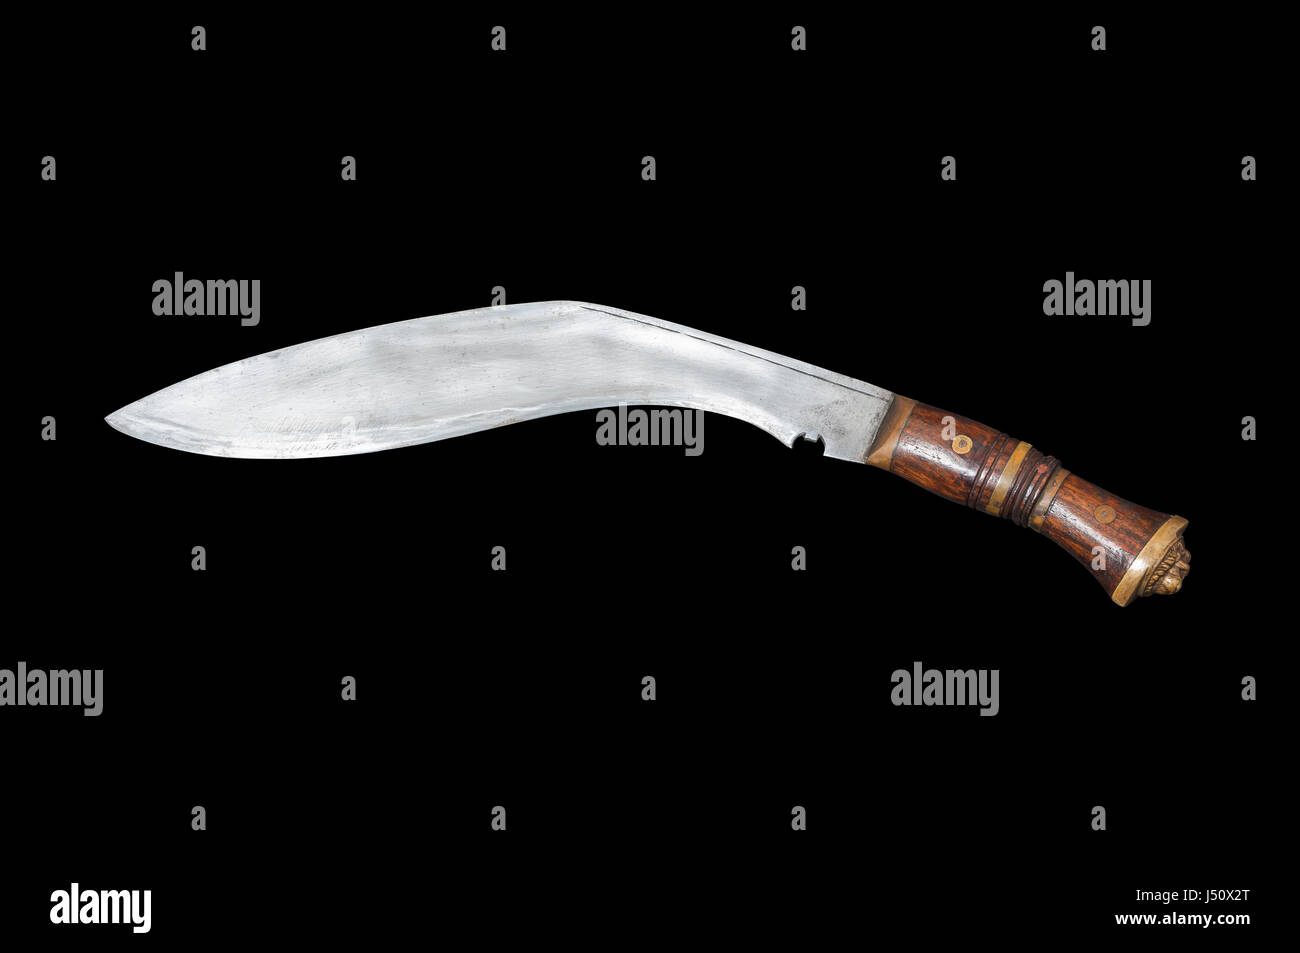 Vntg. Western WW2 Shark Knife with 6” Blade - No Sheath